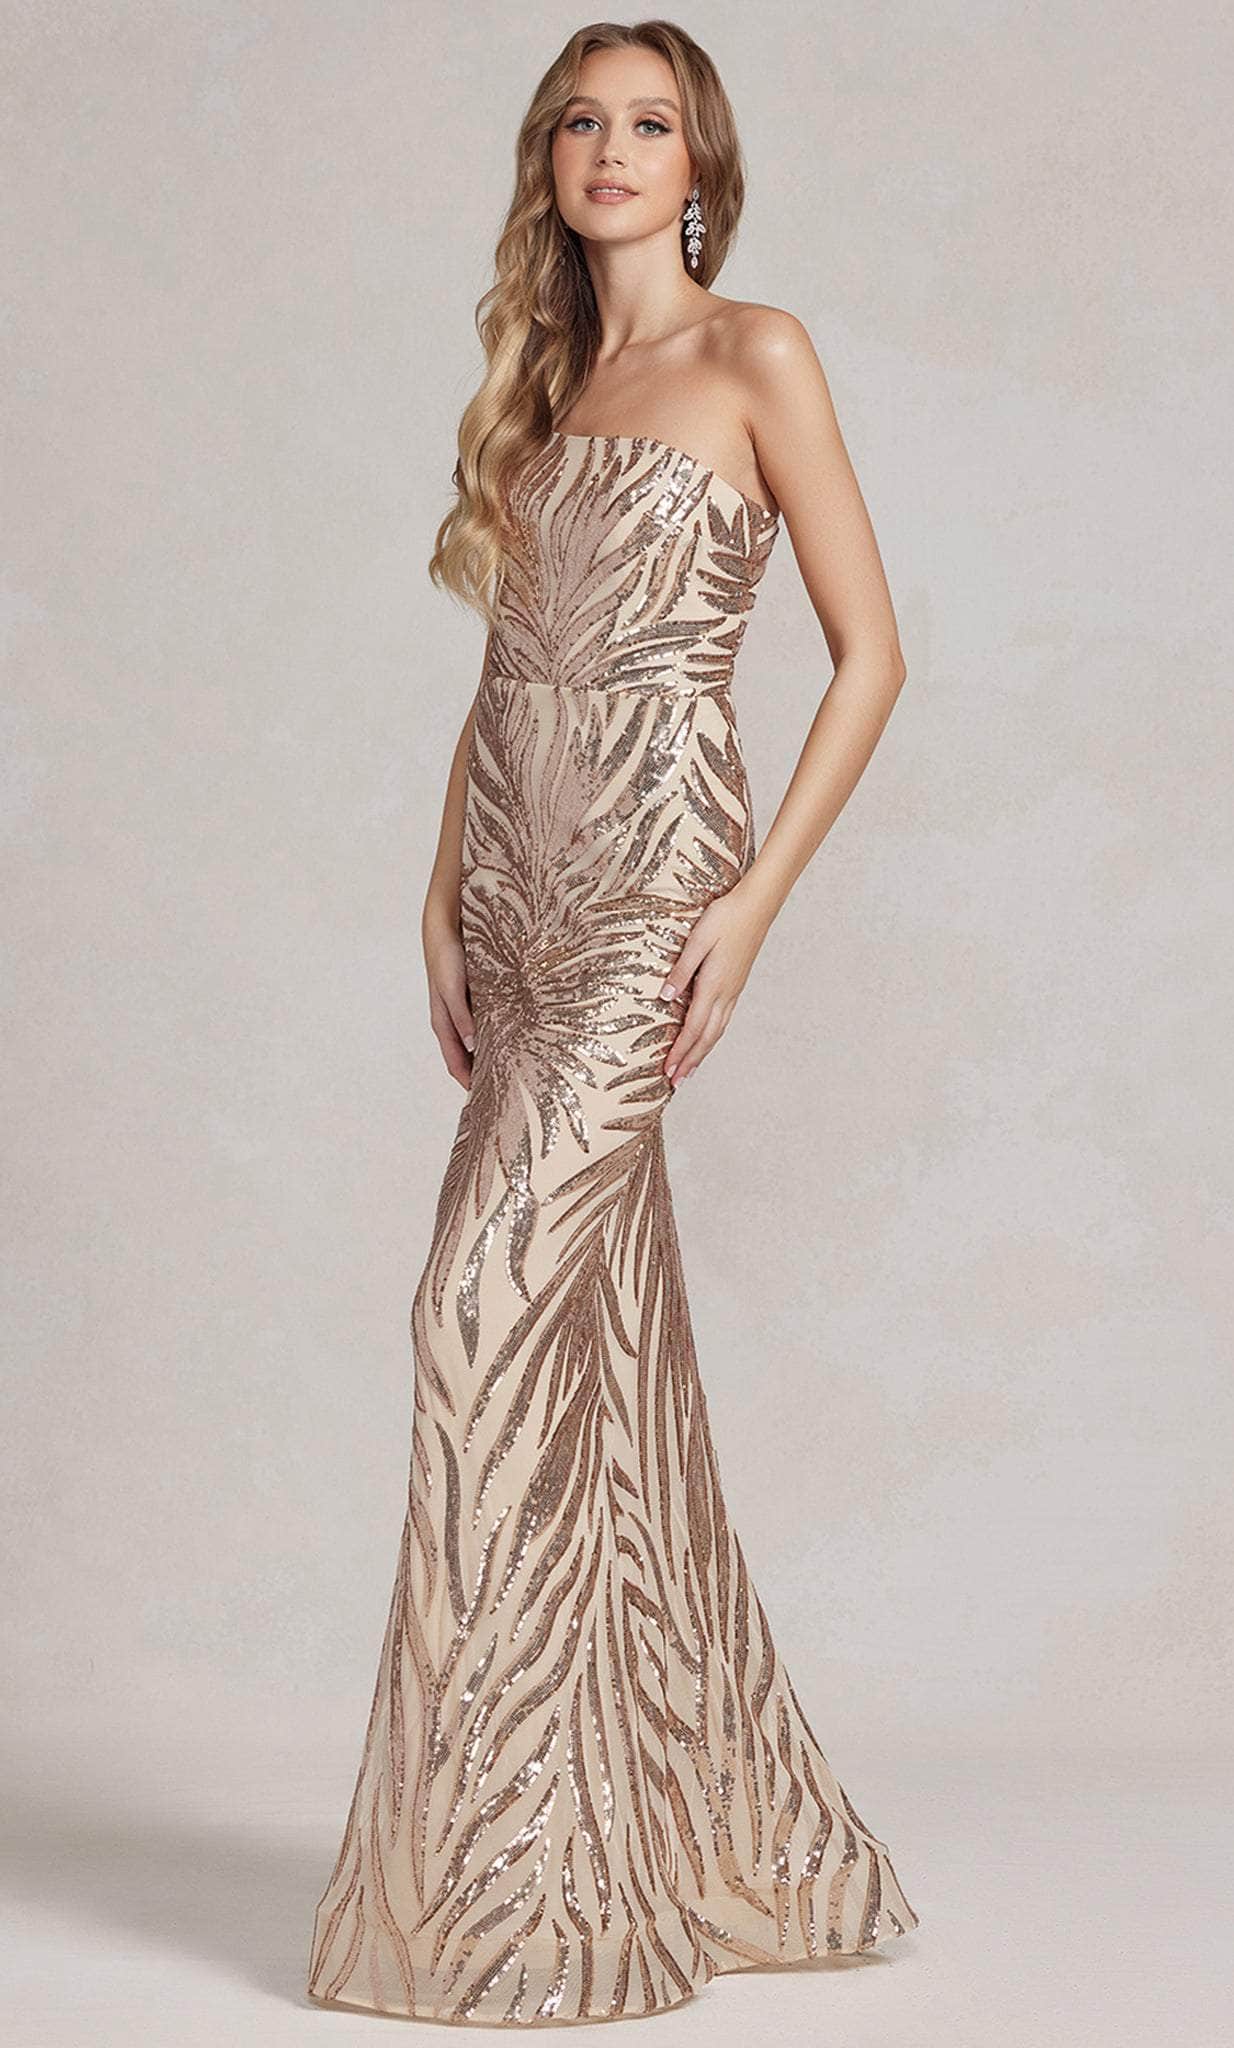 Nox Anabel R1204 - One Shoulder Sequin Evening Dress Evening Dresses 00 / Gold